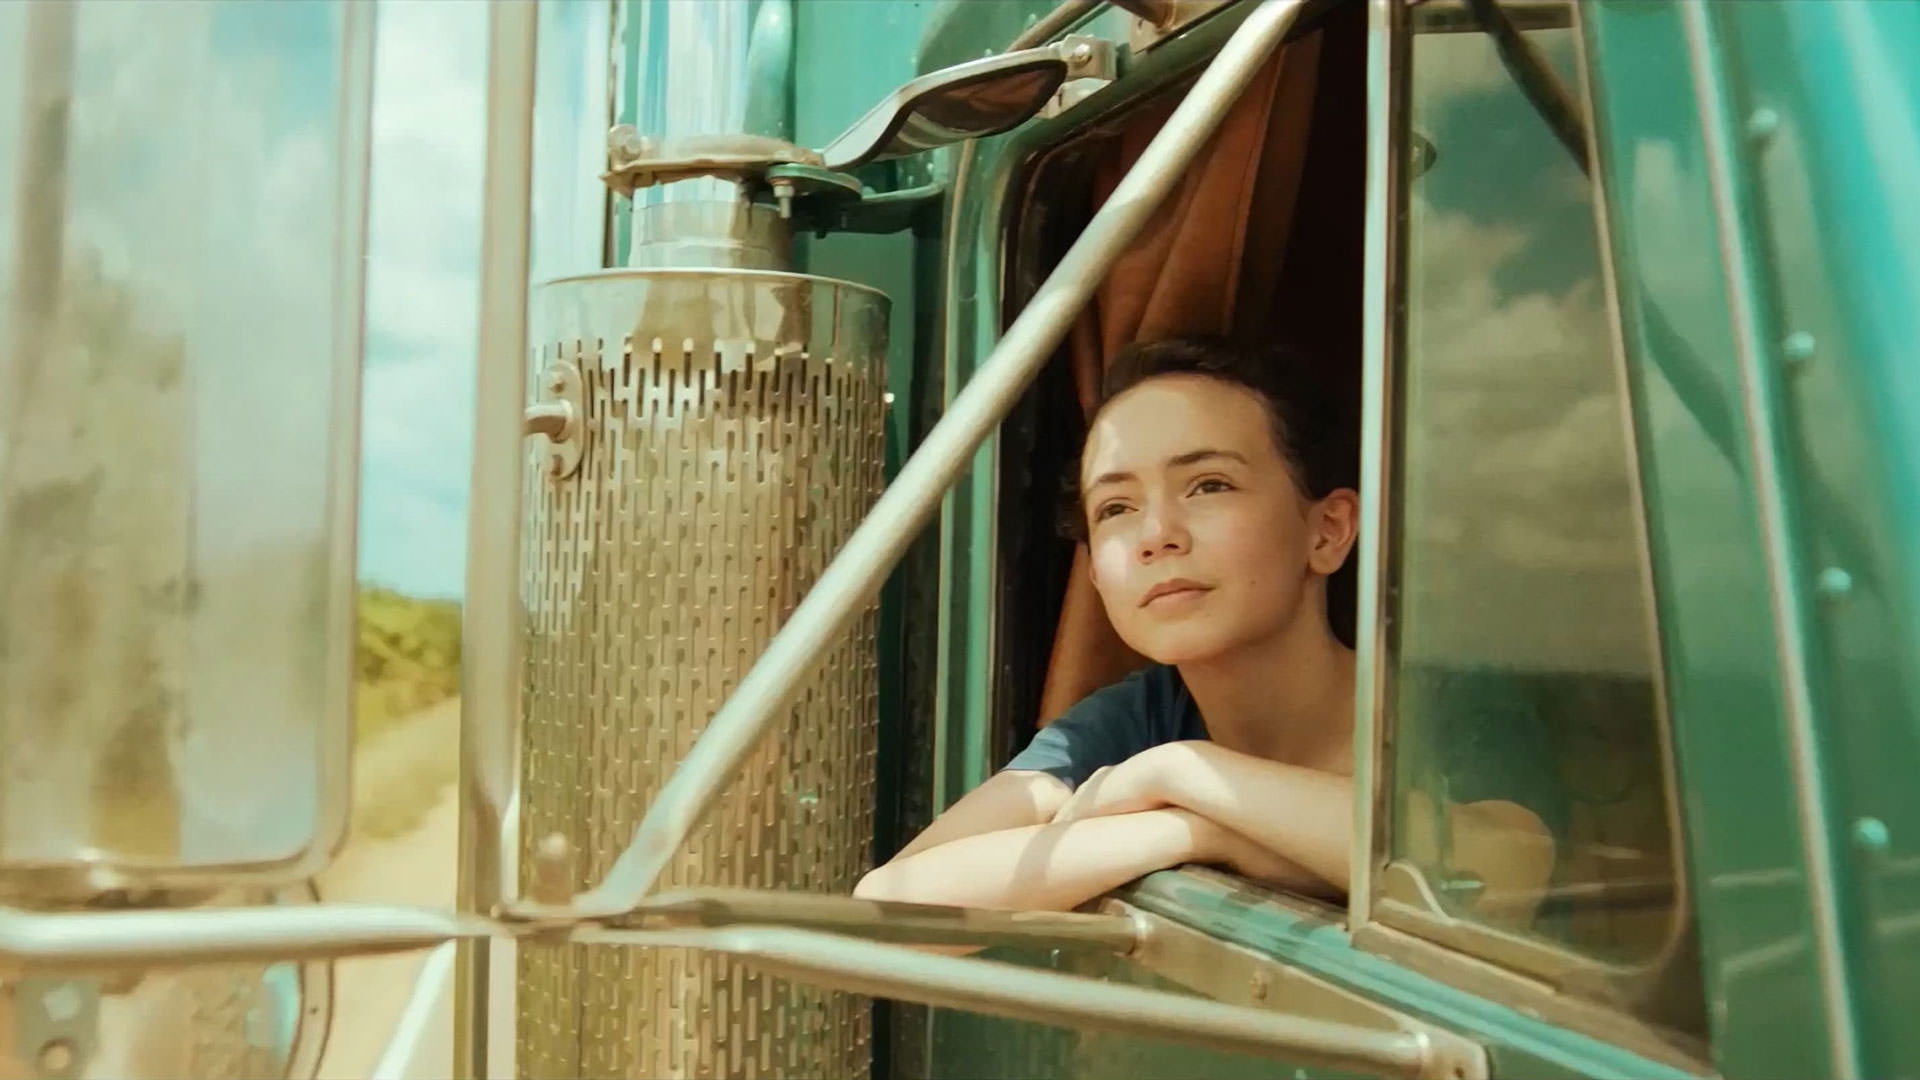 هالا فینلی کنار پنجره‌ی یک کامیون در حال حرکت در روز در صحنه‌ای از فیلم بزرگراه بهشت